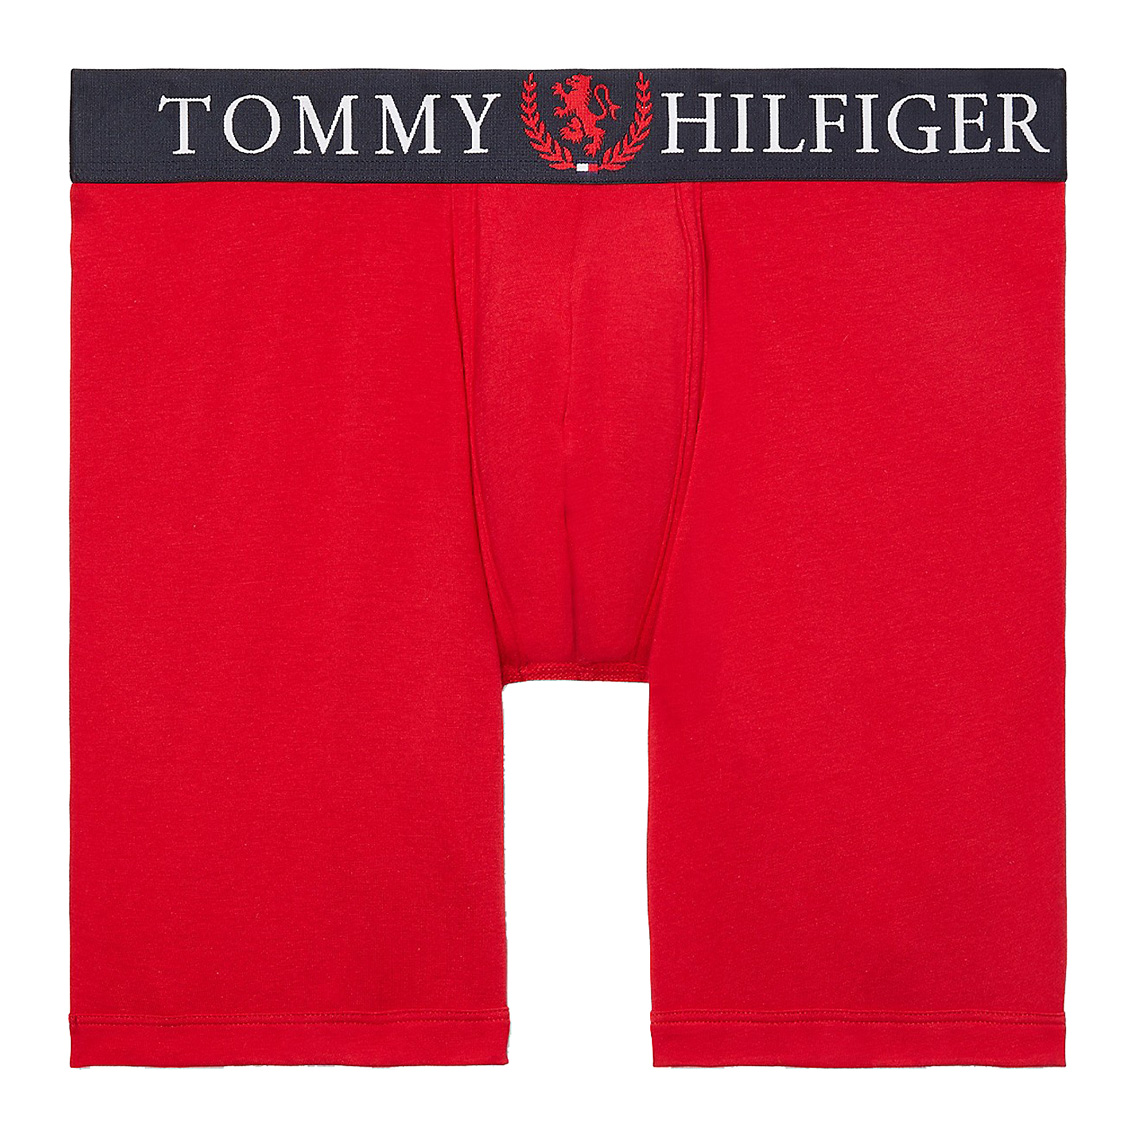 【ネコポス可:2点まで】[09T4067-608] TOMMY HILFIGER トミーヒルフィガー ボクサーパンツ メンズ アンダーウェア インナー 男性 下着 ブ